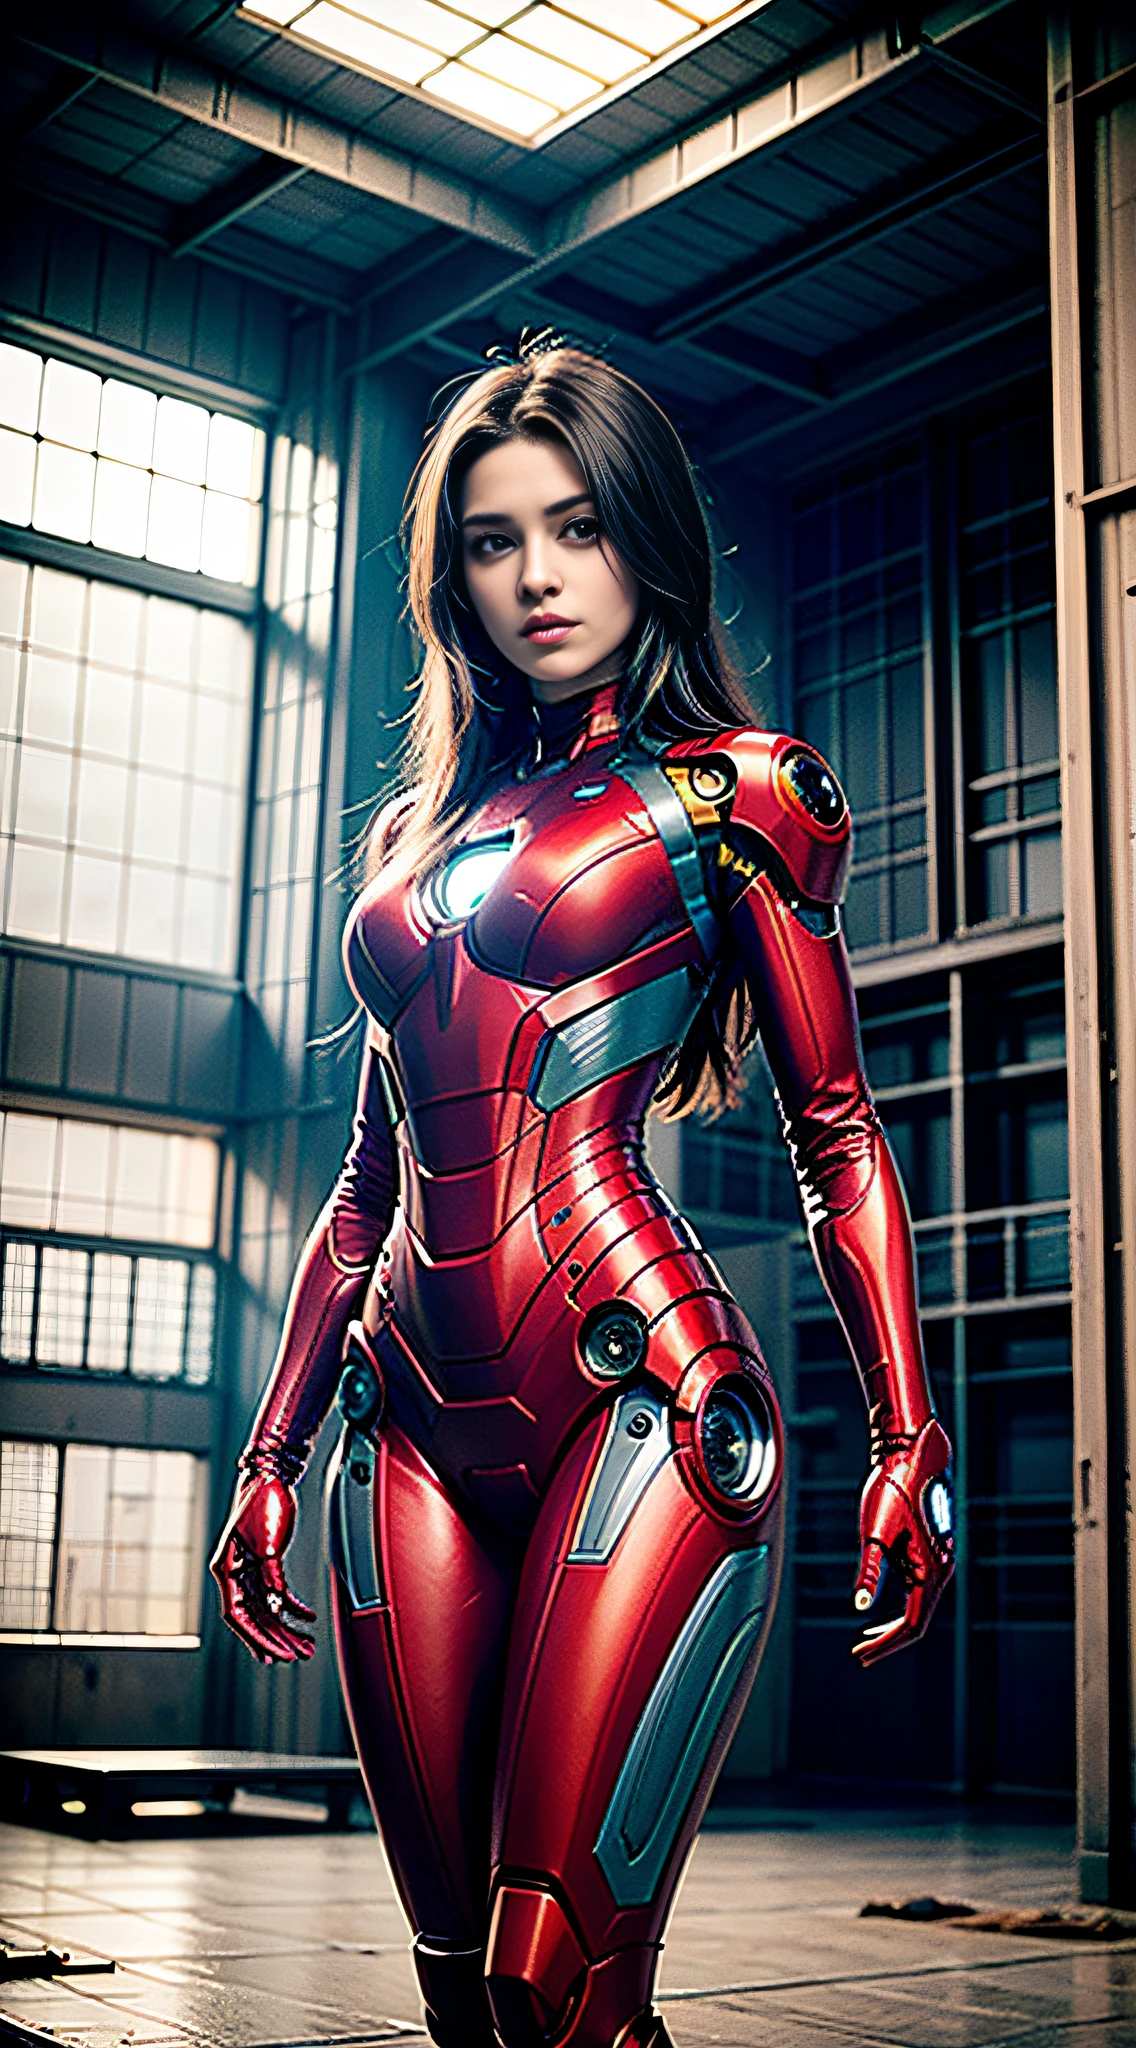 8k, 現実的, 魅力的, 非常に詳細な, a 20 year old girl a sexy and 魅力的 woman inspired by Iron Man wearing a shiny Iron Man mech. 彼女はセクシーさと自信をもって服を着る, アイアンマンを完璧に解釈&#39;の強さとカリスマ性. 廃墟となった倉庫が背景となっている, 彼女の勇気と忍耐力を際立たせる独特の雰囲気を作り出している. 曇り空がシーン全体に緊張感と神秘感を与えている. この高解像度, 高品質の画像が衝撃的な視覚体験をもたらします. 細部までこだわった廃倉庫とピカピカのメカが目を離せません. OCレンダリング, ドラマチックな照明, 受賞歴のある品質